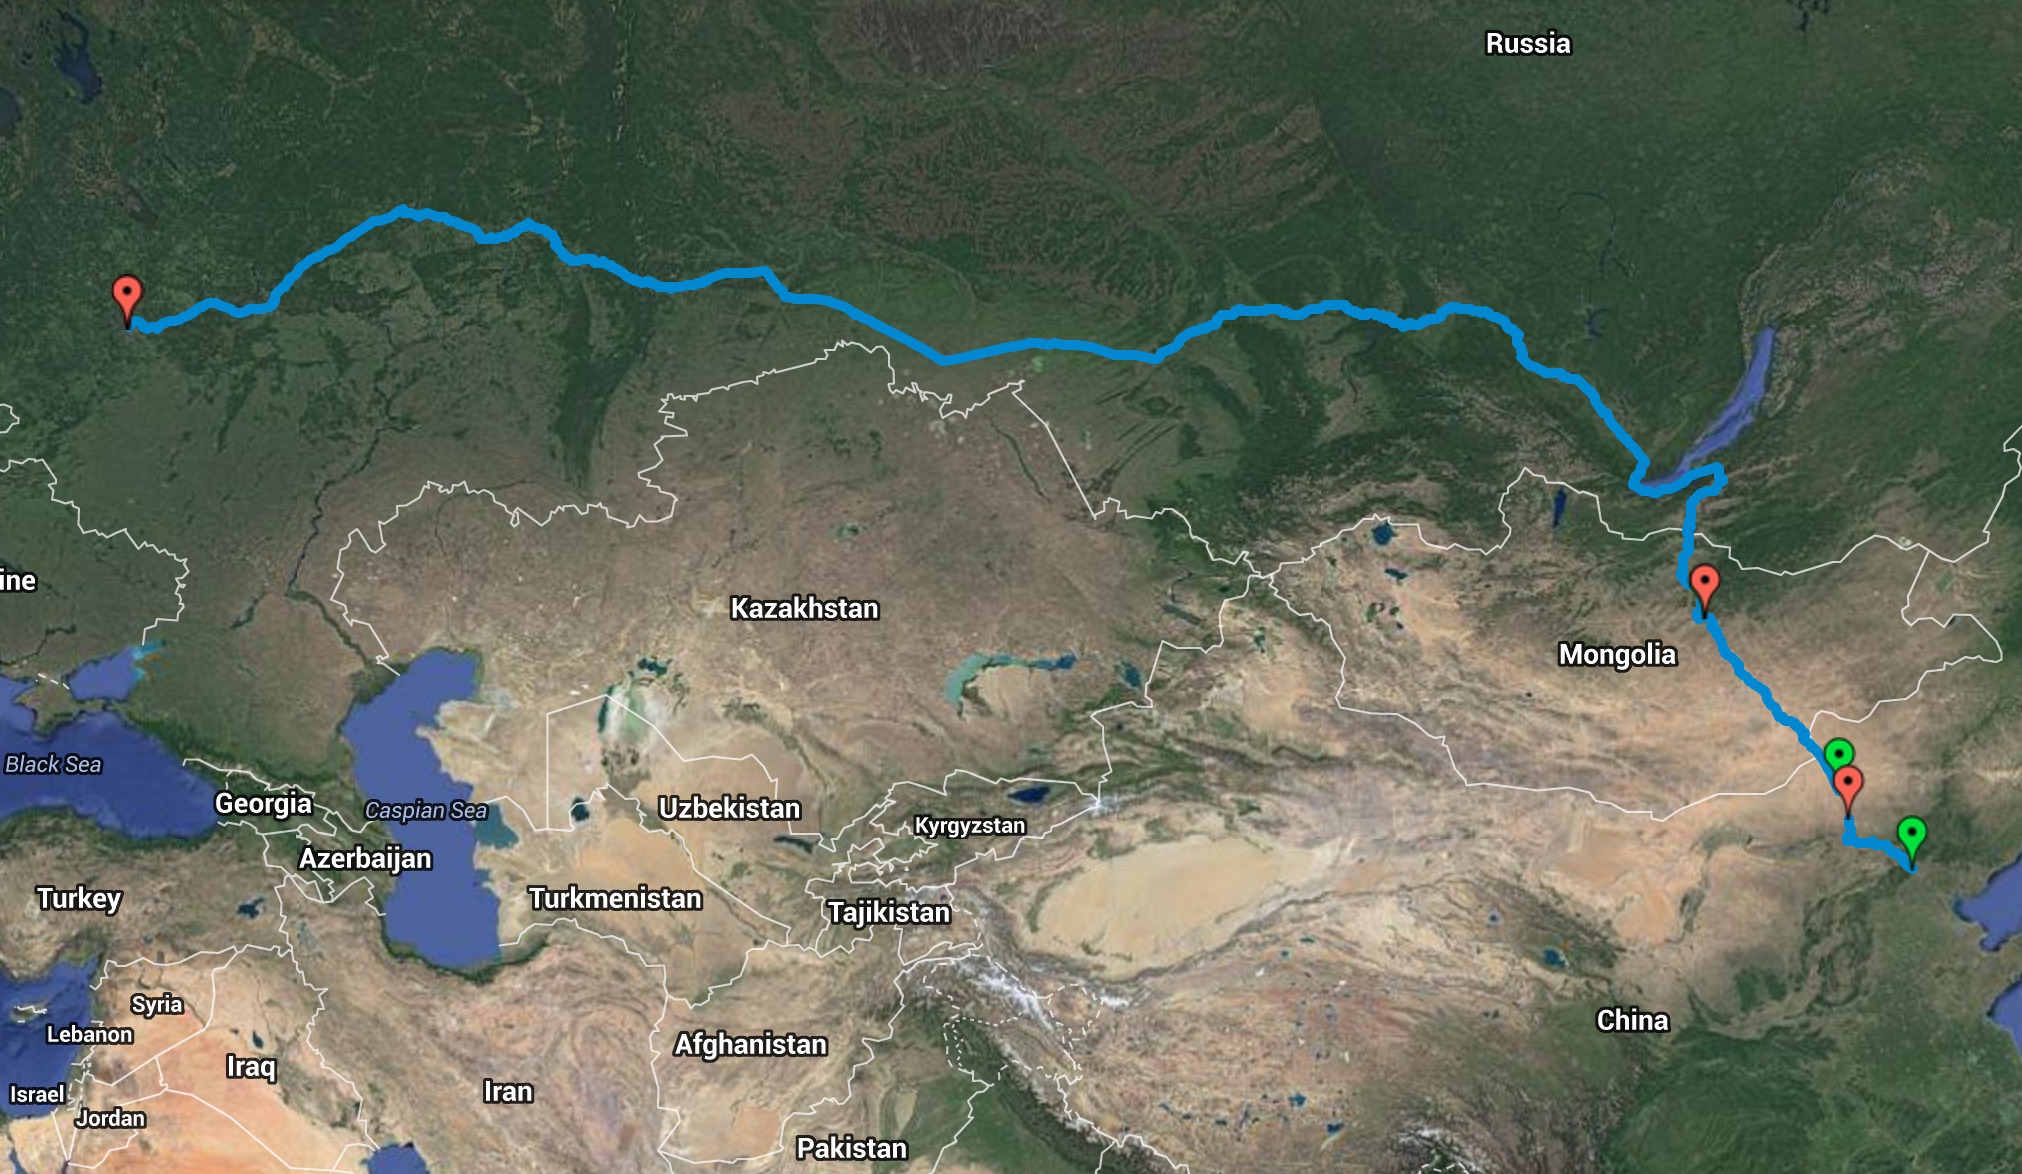 граница между казахстаном и китаем